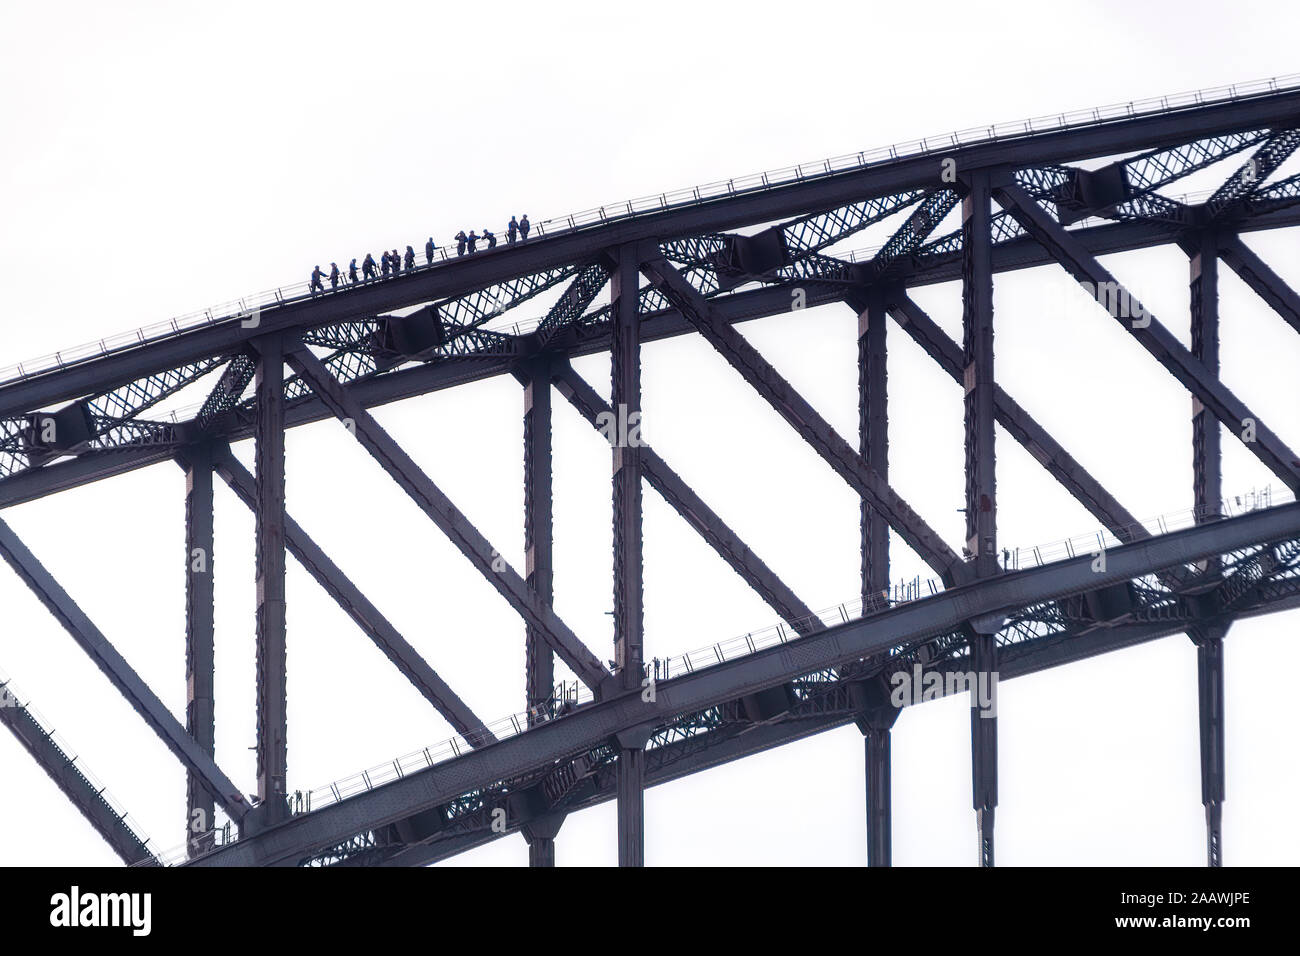 Les gens Silhouette escalade Pont de Sydney contre l'Australie, ciel clair Banque D'Images